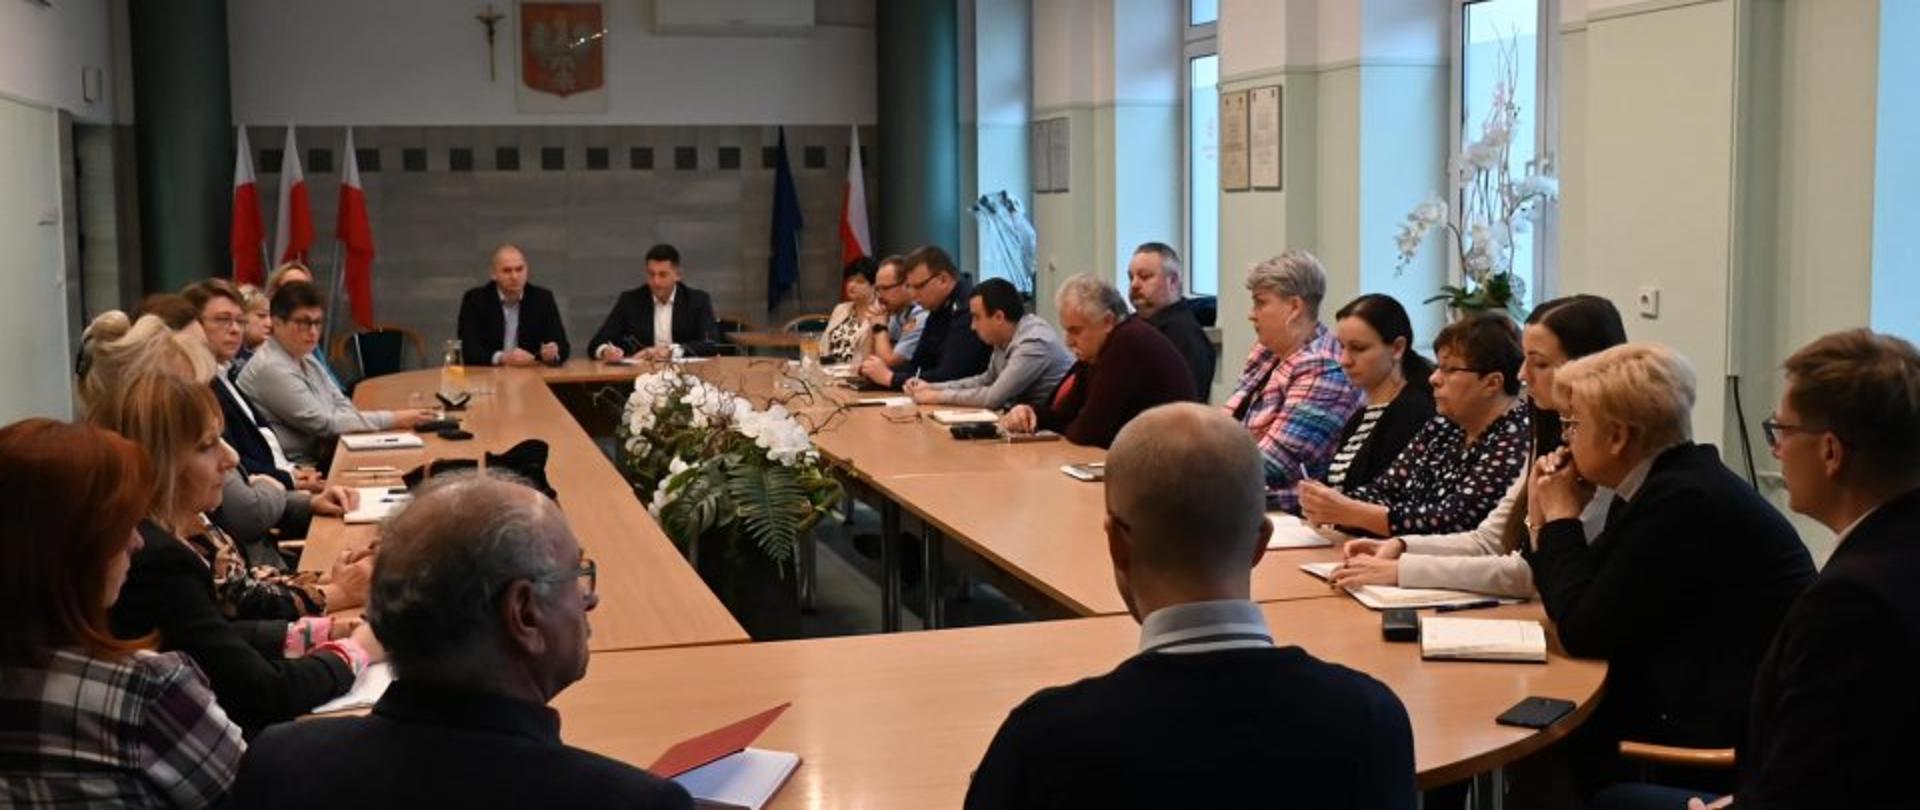 Na zdjęciu widzimy Posiedzenie Miejskiego Zespołu Zarządzania Kryzysowego Konstantynowa Łódzkiego na sali konferencyjnej w urzędzie miejskim.